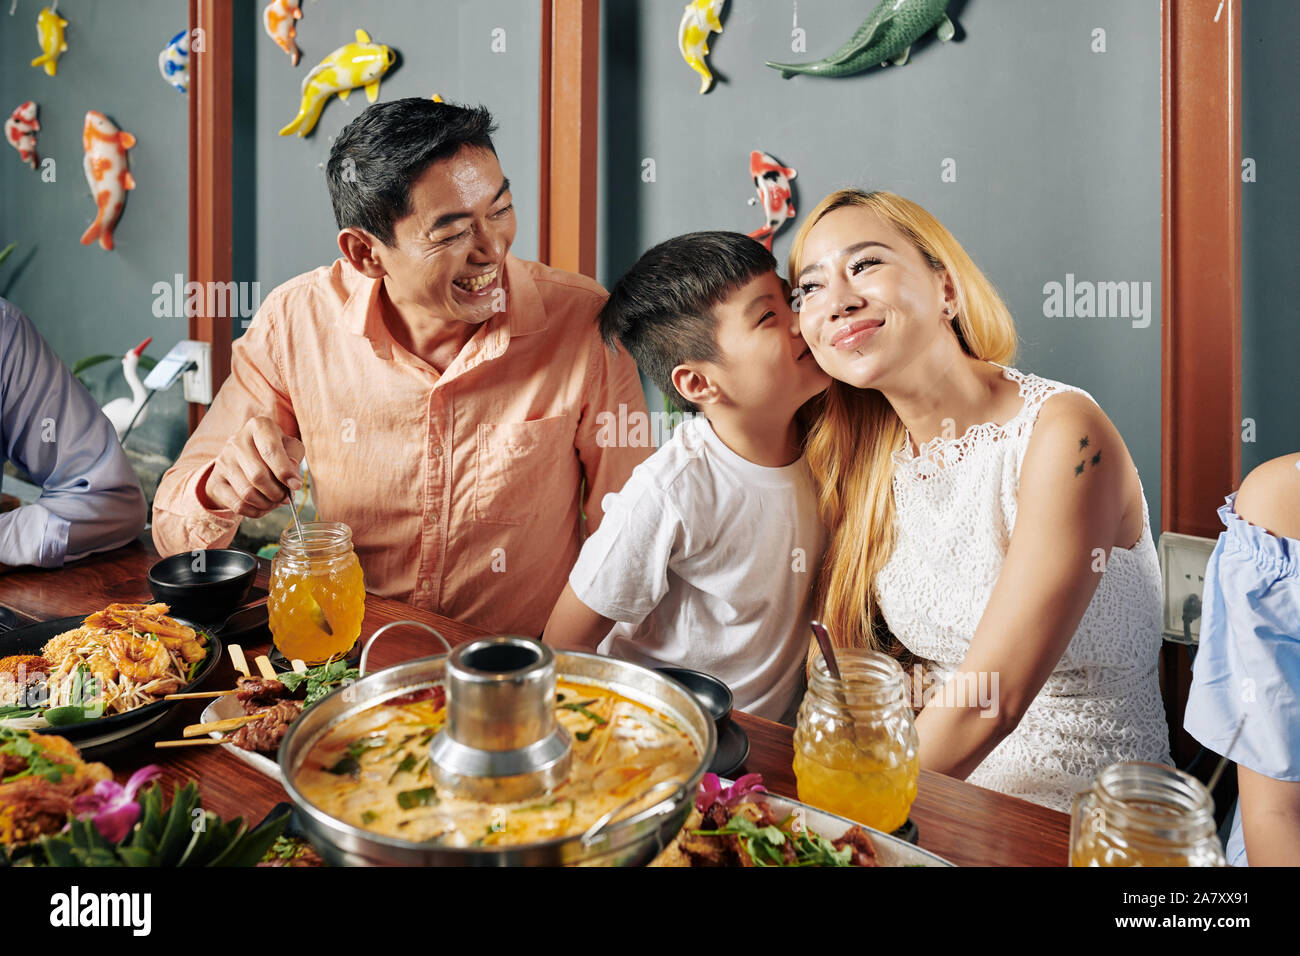 Felice piccolo grazioso ragazzo vietnamita di baciare la sua bella sorridente madre sulla guancia quando essi sono familiari aventi la cena in ristorante Foto Stock